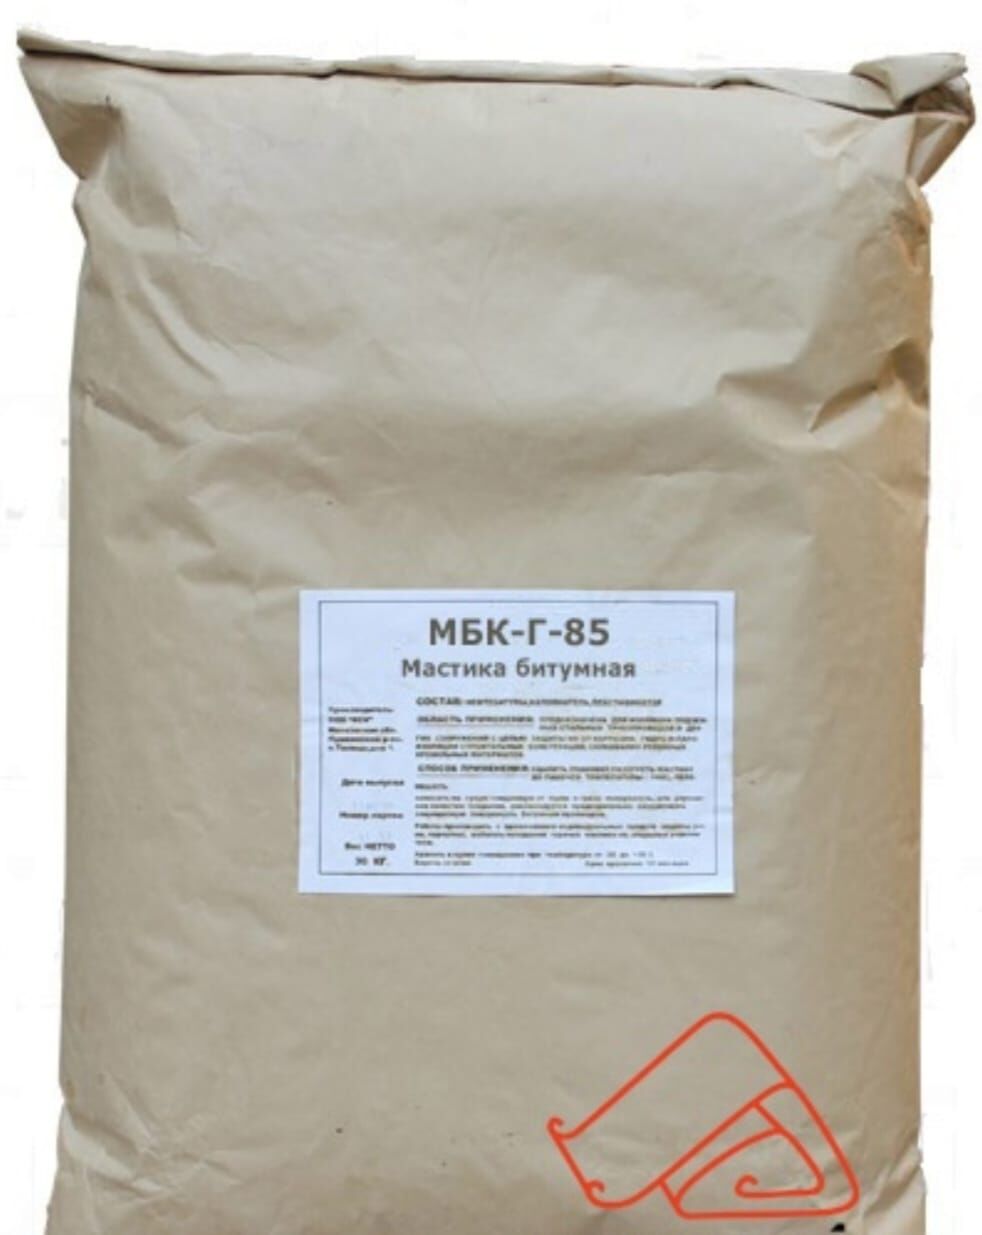 Горячая мастика (МБК-Г-85) ,,50 кг